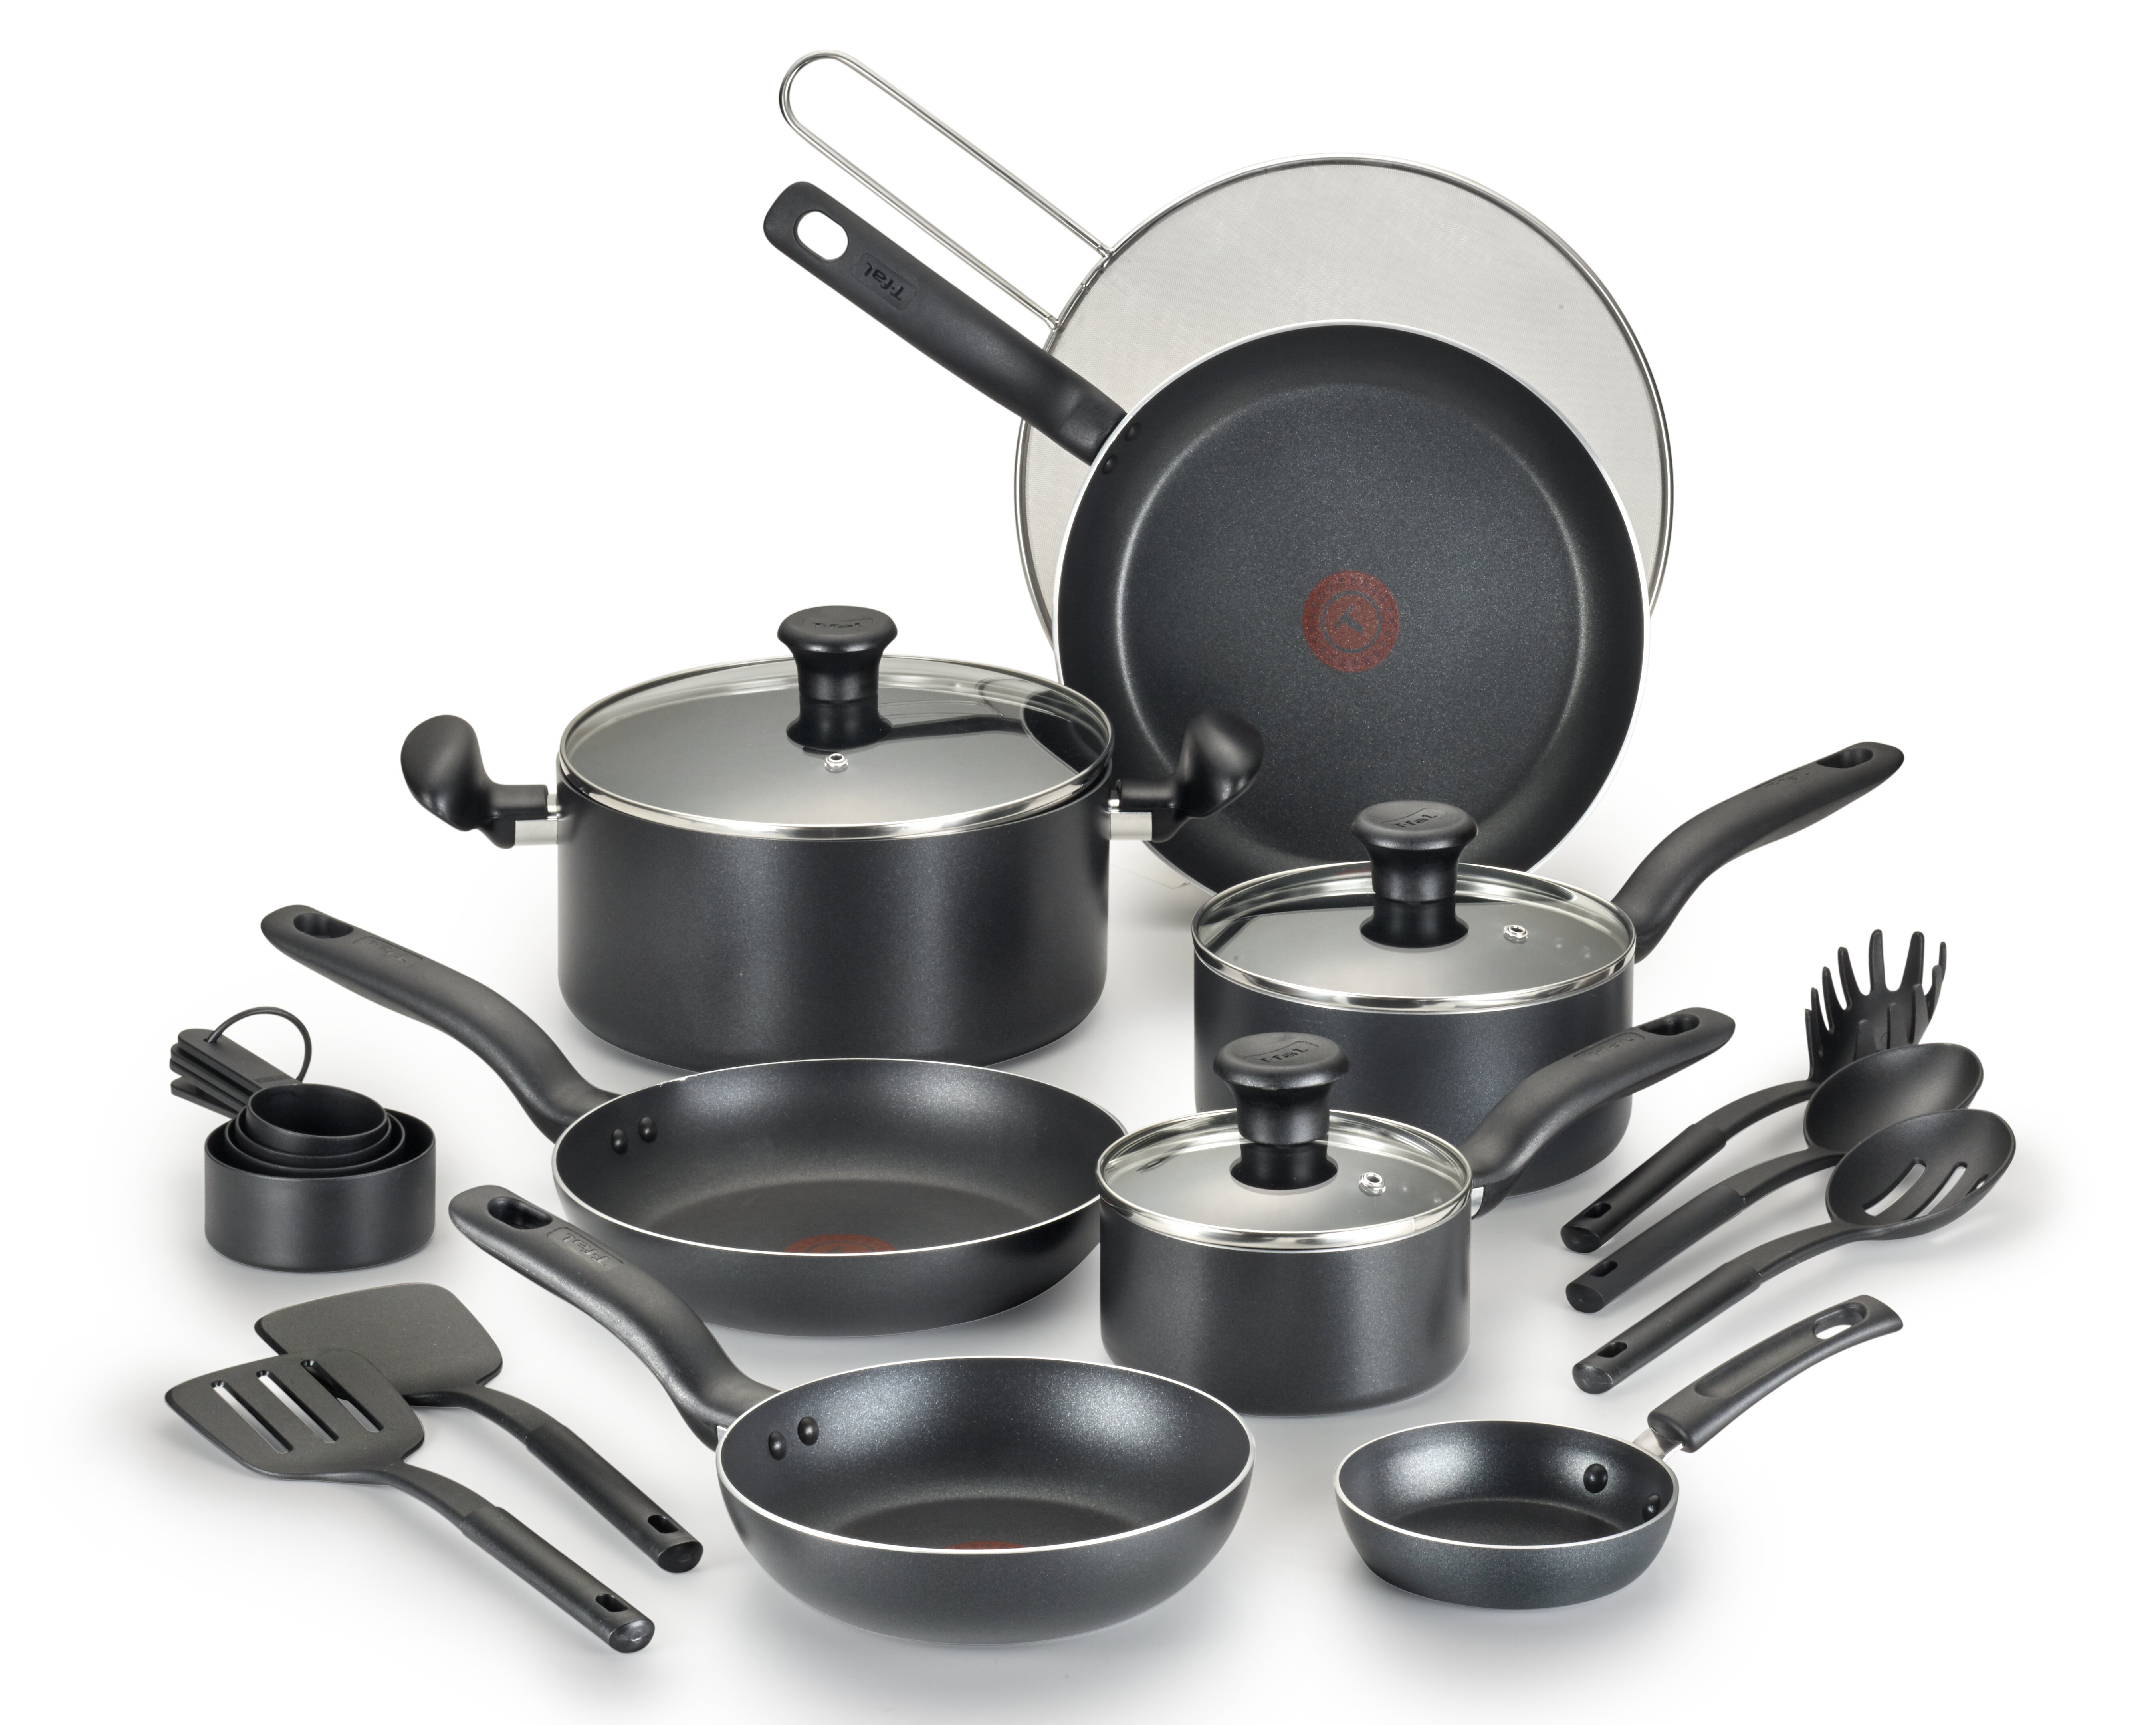 https://assets.wfcdn.com/im/42651441/compr-r85/8507/85070410/t-fal-nonstick-aluminum-cookware-set-cooking-utensils-11-piece.jpg